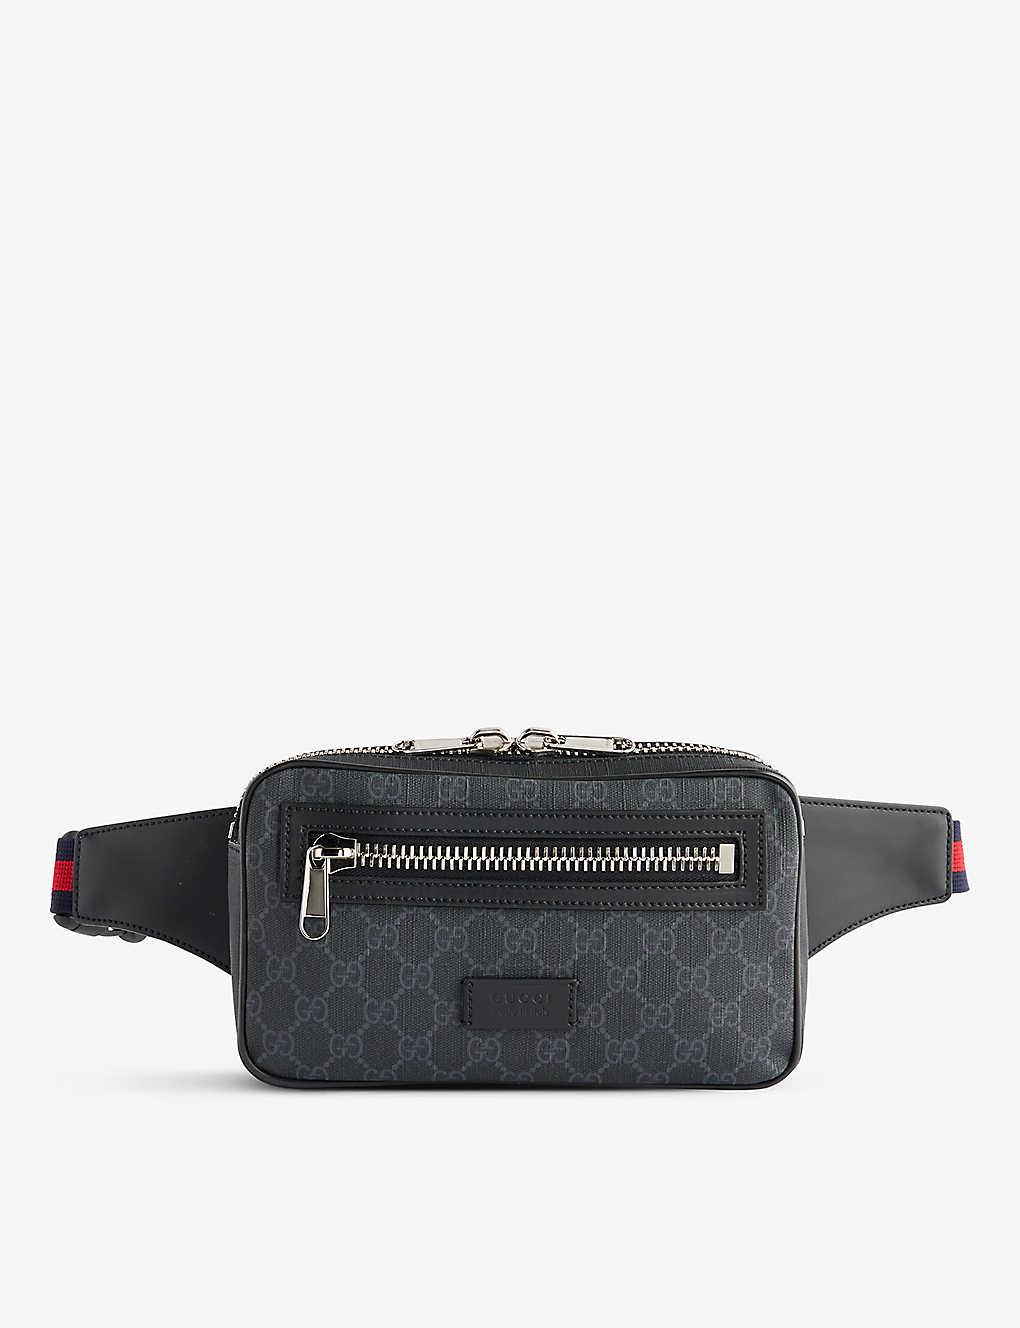 Gucci gg Supreme Canvas Belt Bag in Black for Men